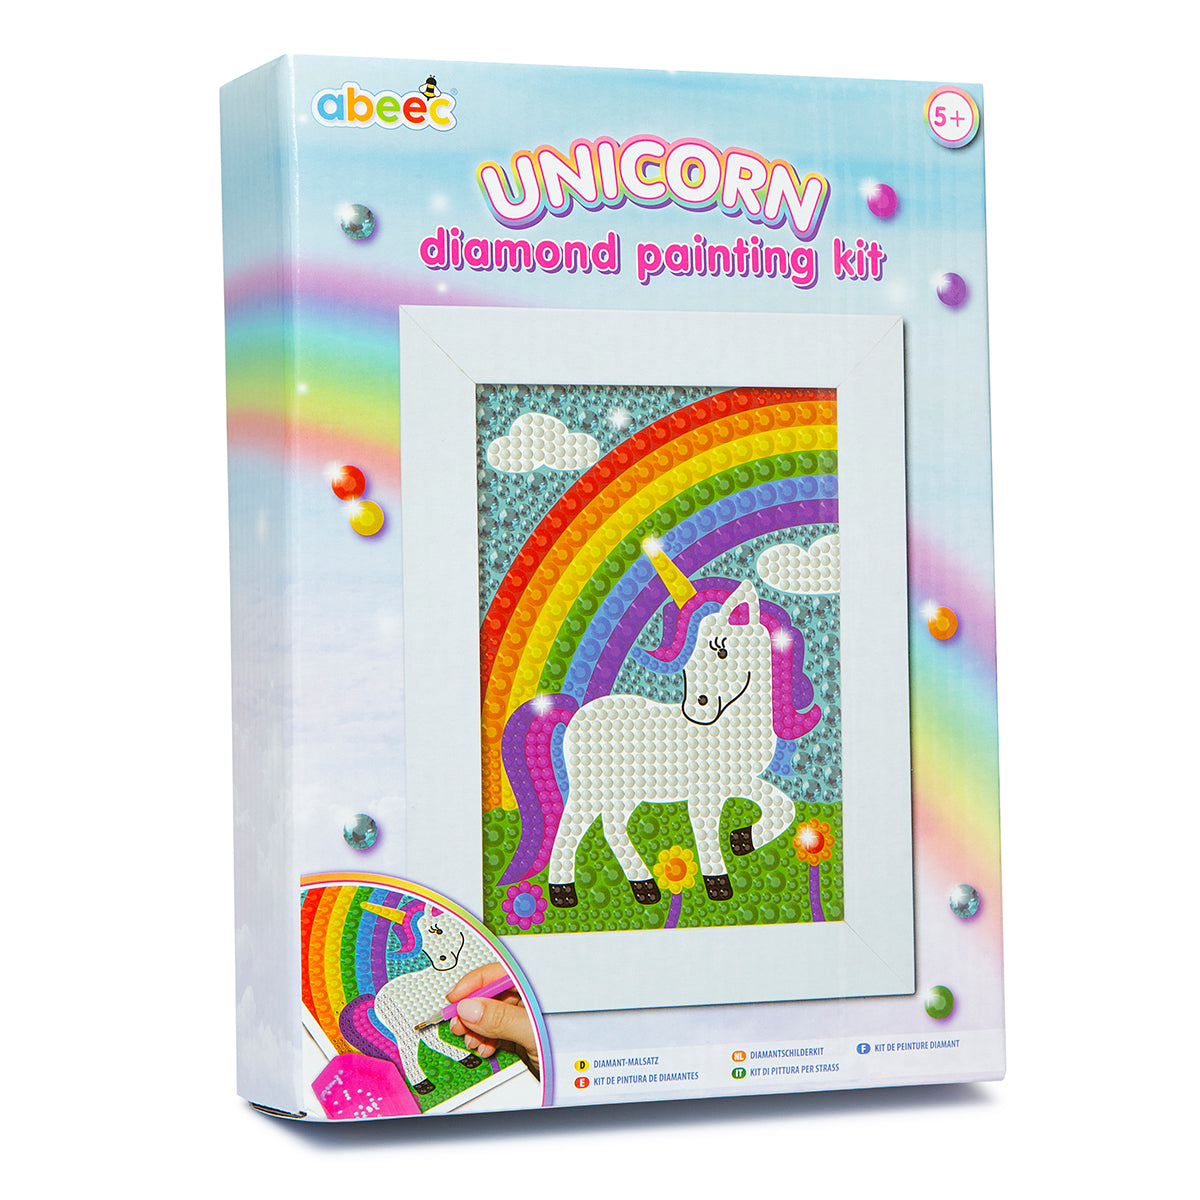 Crafting Spark Playful Unicorn Diamond Painting Kit